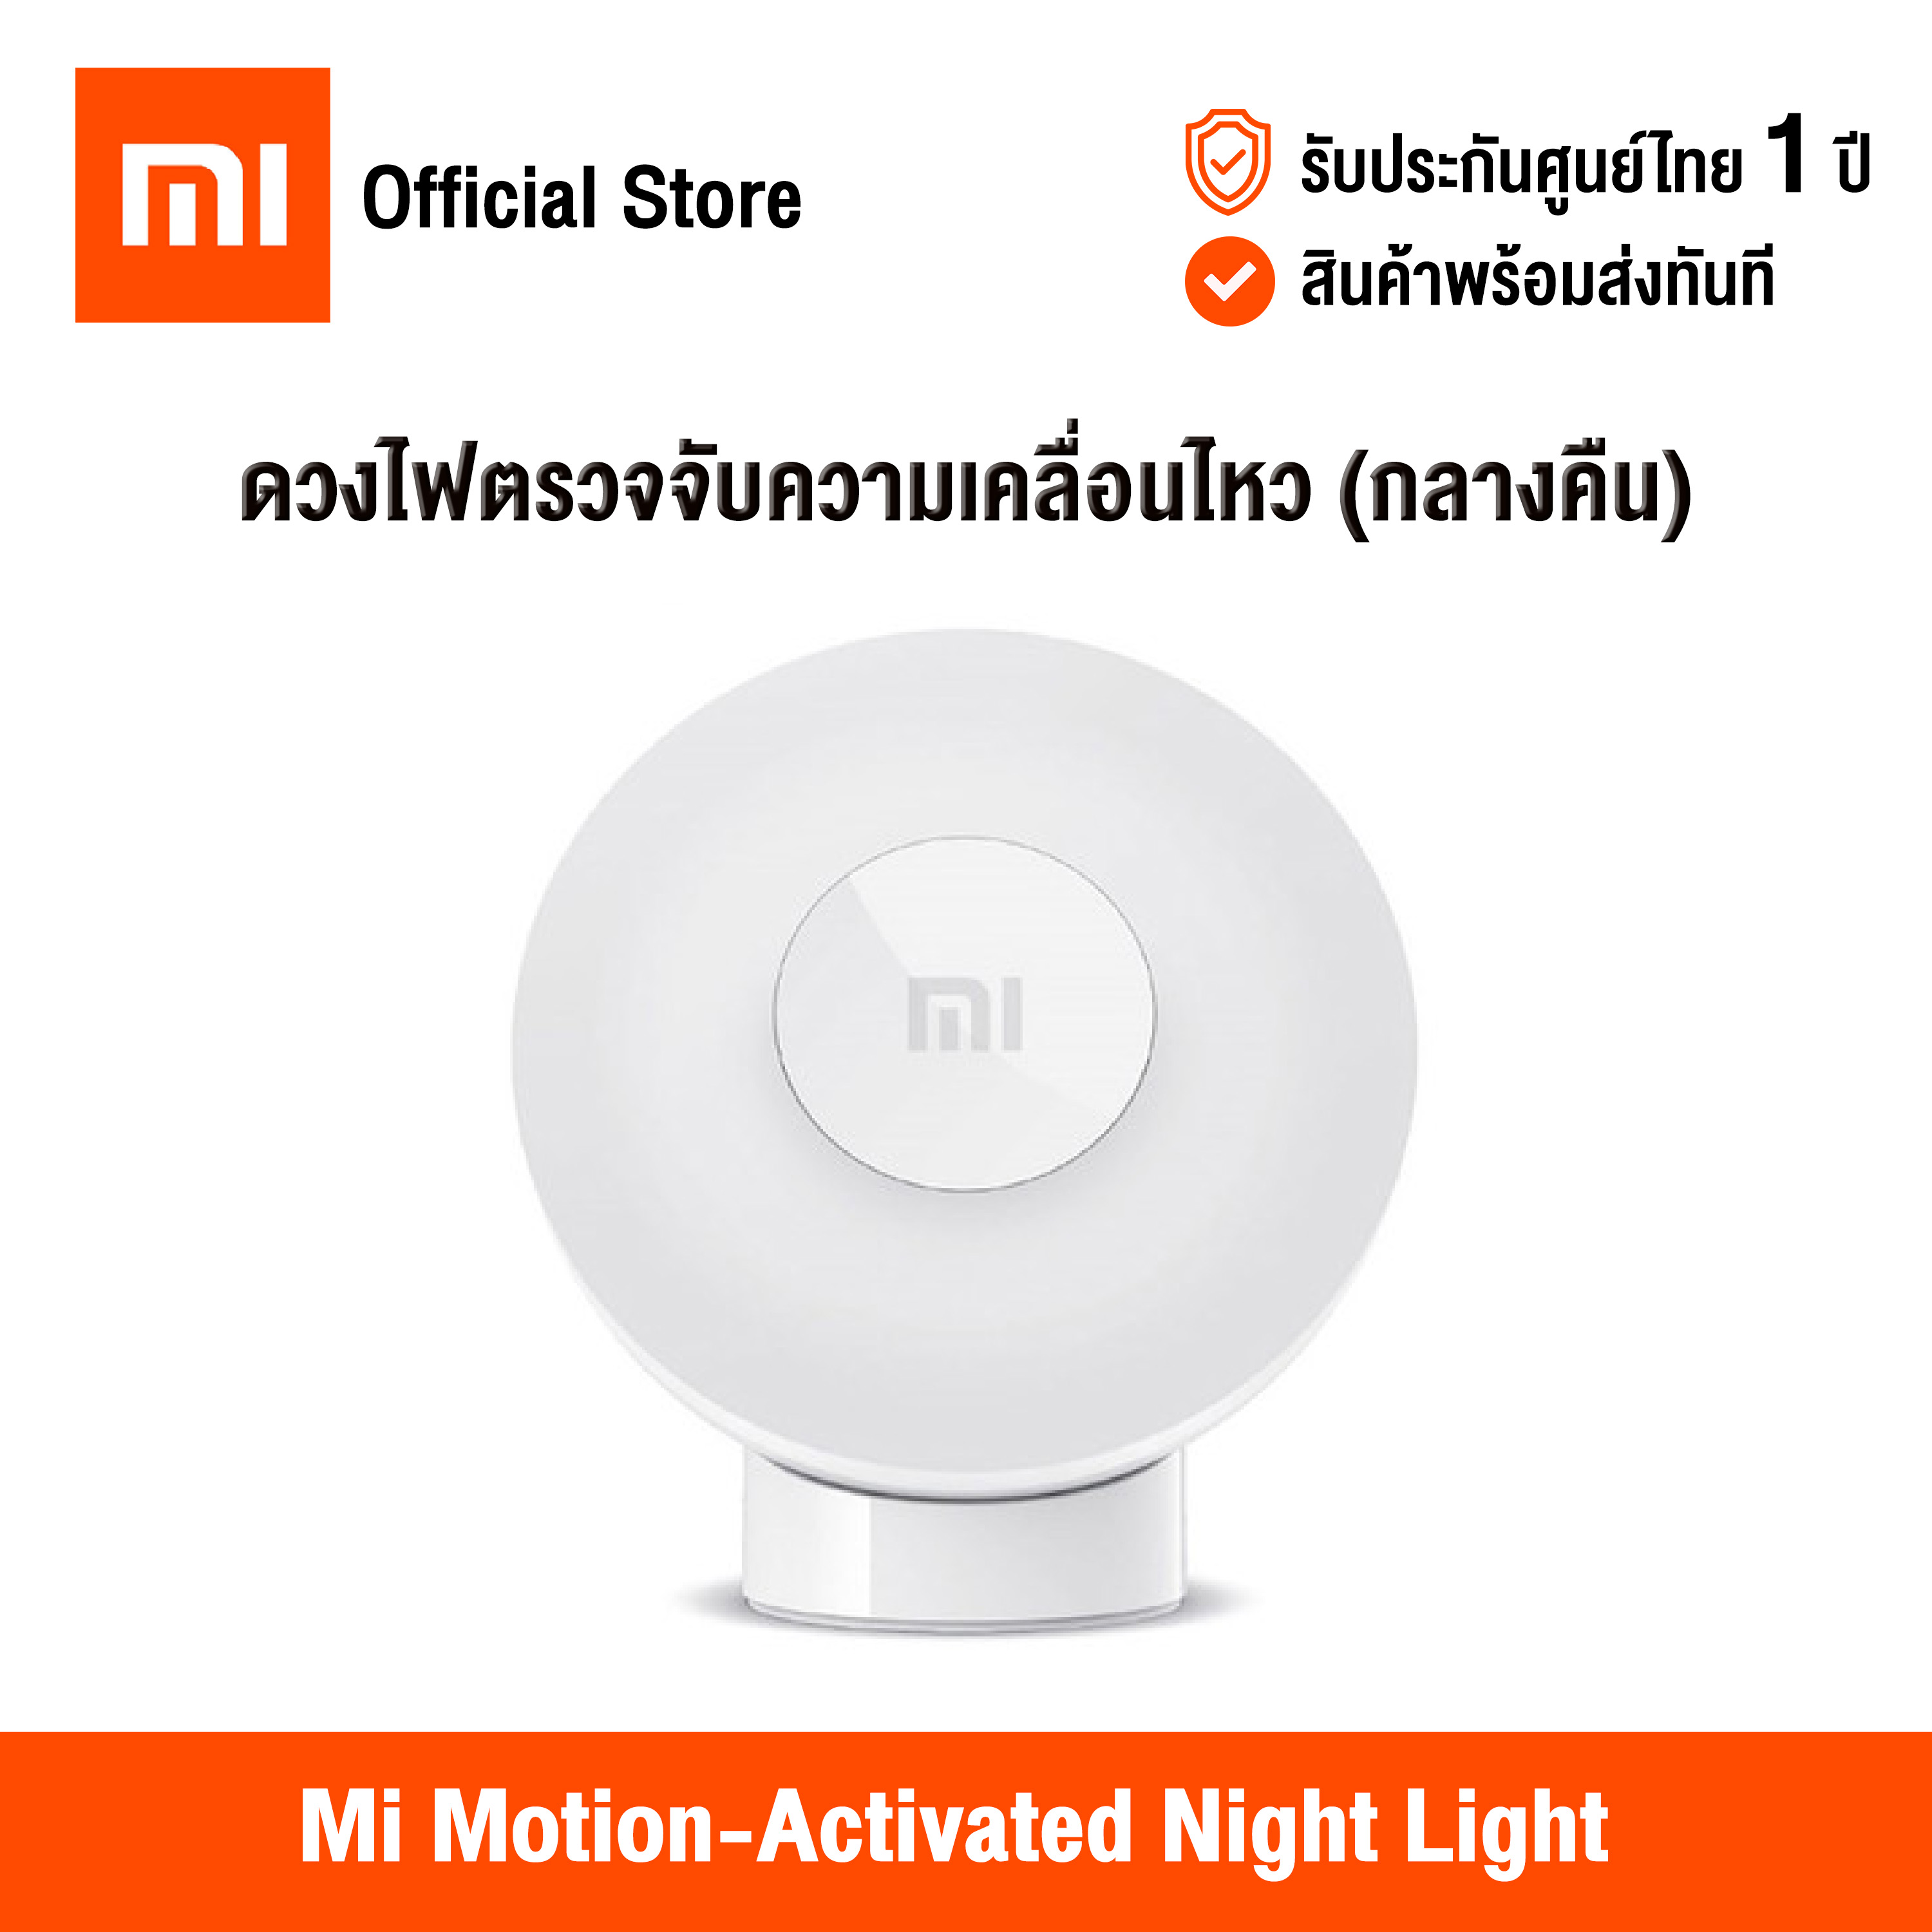 [ศูนย์ไทย] Xiaomi Mi Motion-Activated Night Light 2  (Global Version) เสี่ยวหมี่ ดวงไฟตรวจจับความเคลื่อนไหว (กลางคืน) เซนเซอร์ตรวจจับแสง 360 องศา